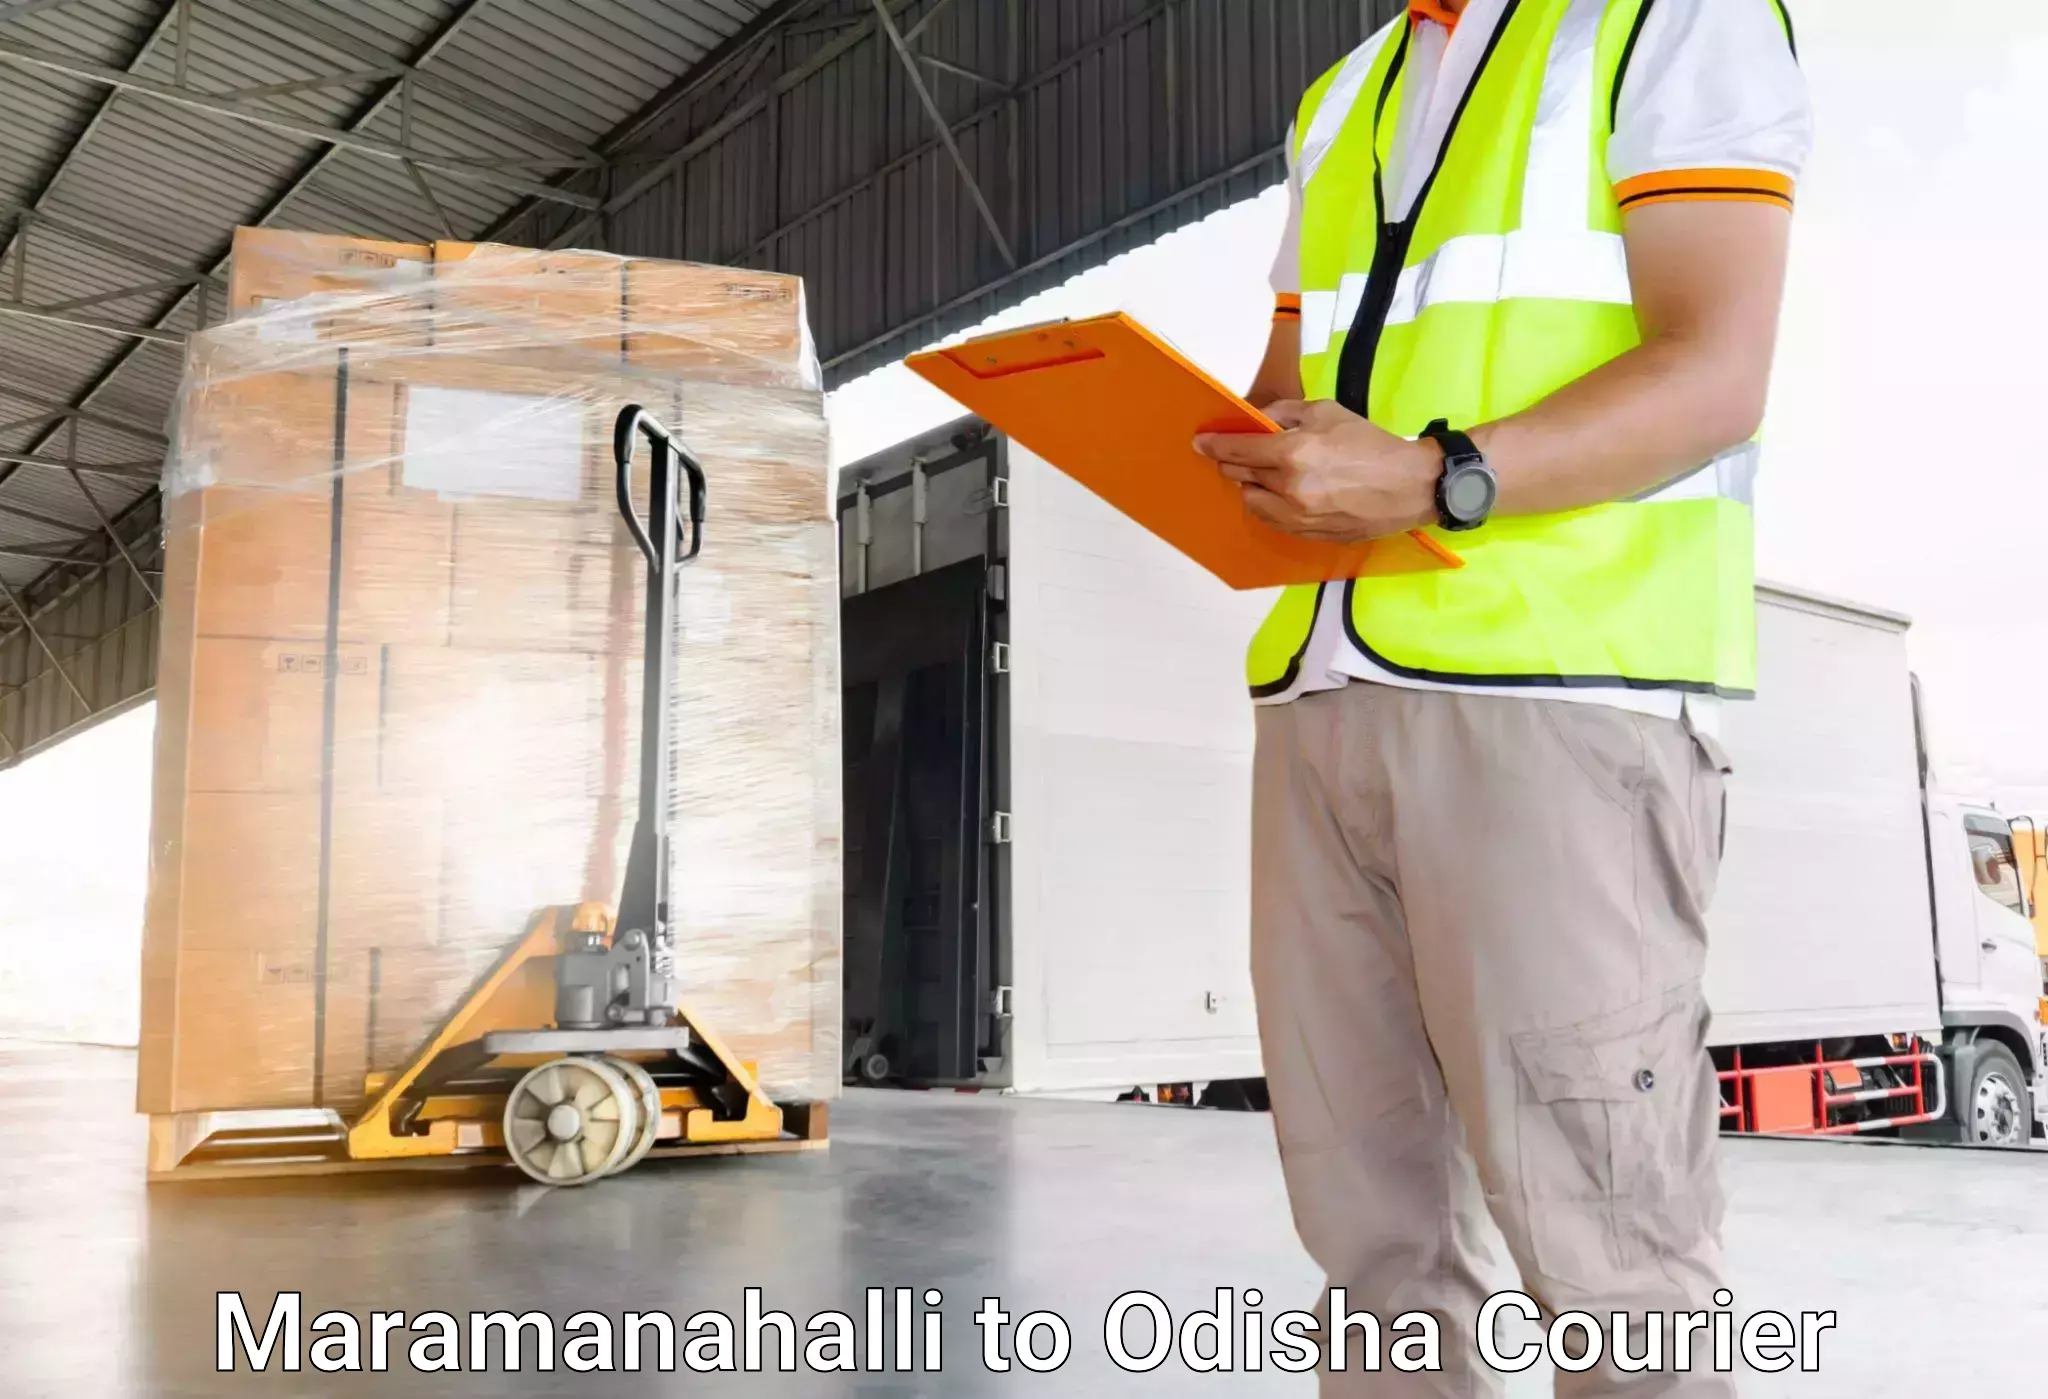 Luggage shipping service Maramanahalli to Paralakhemundi